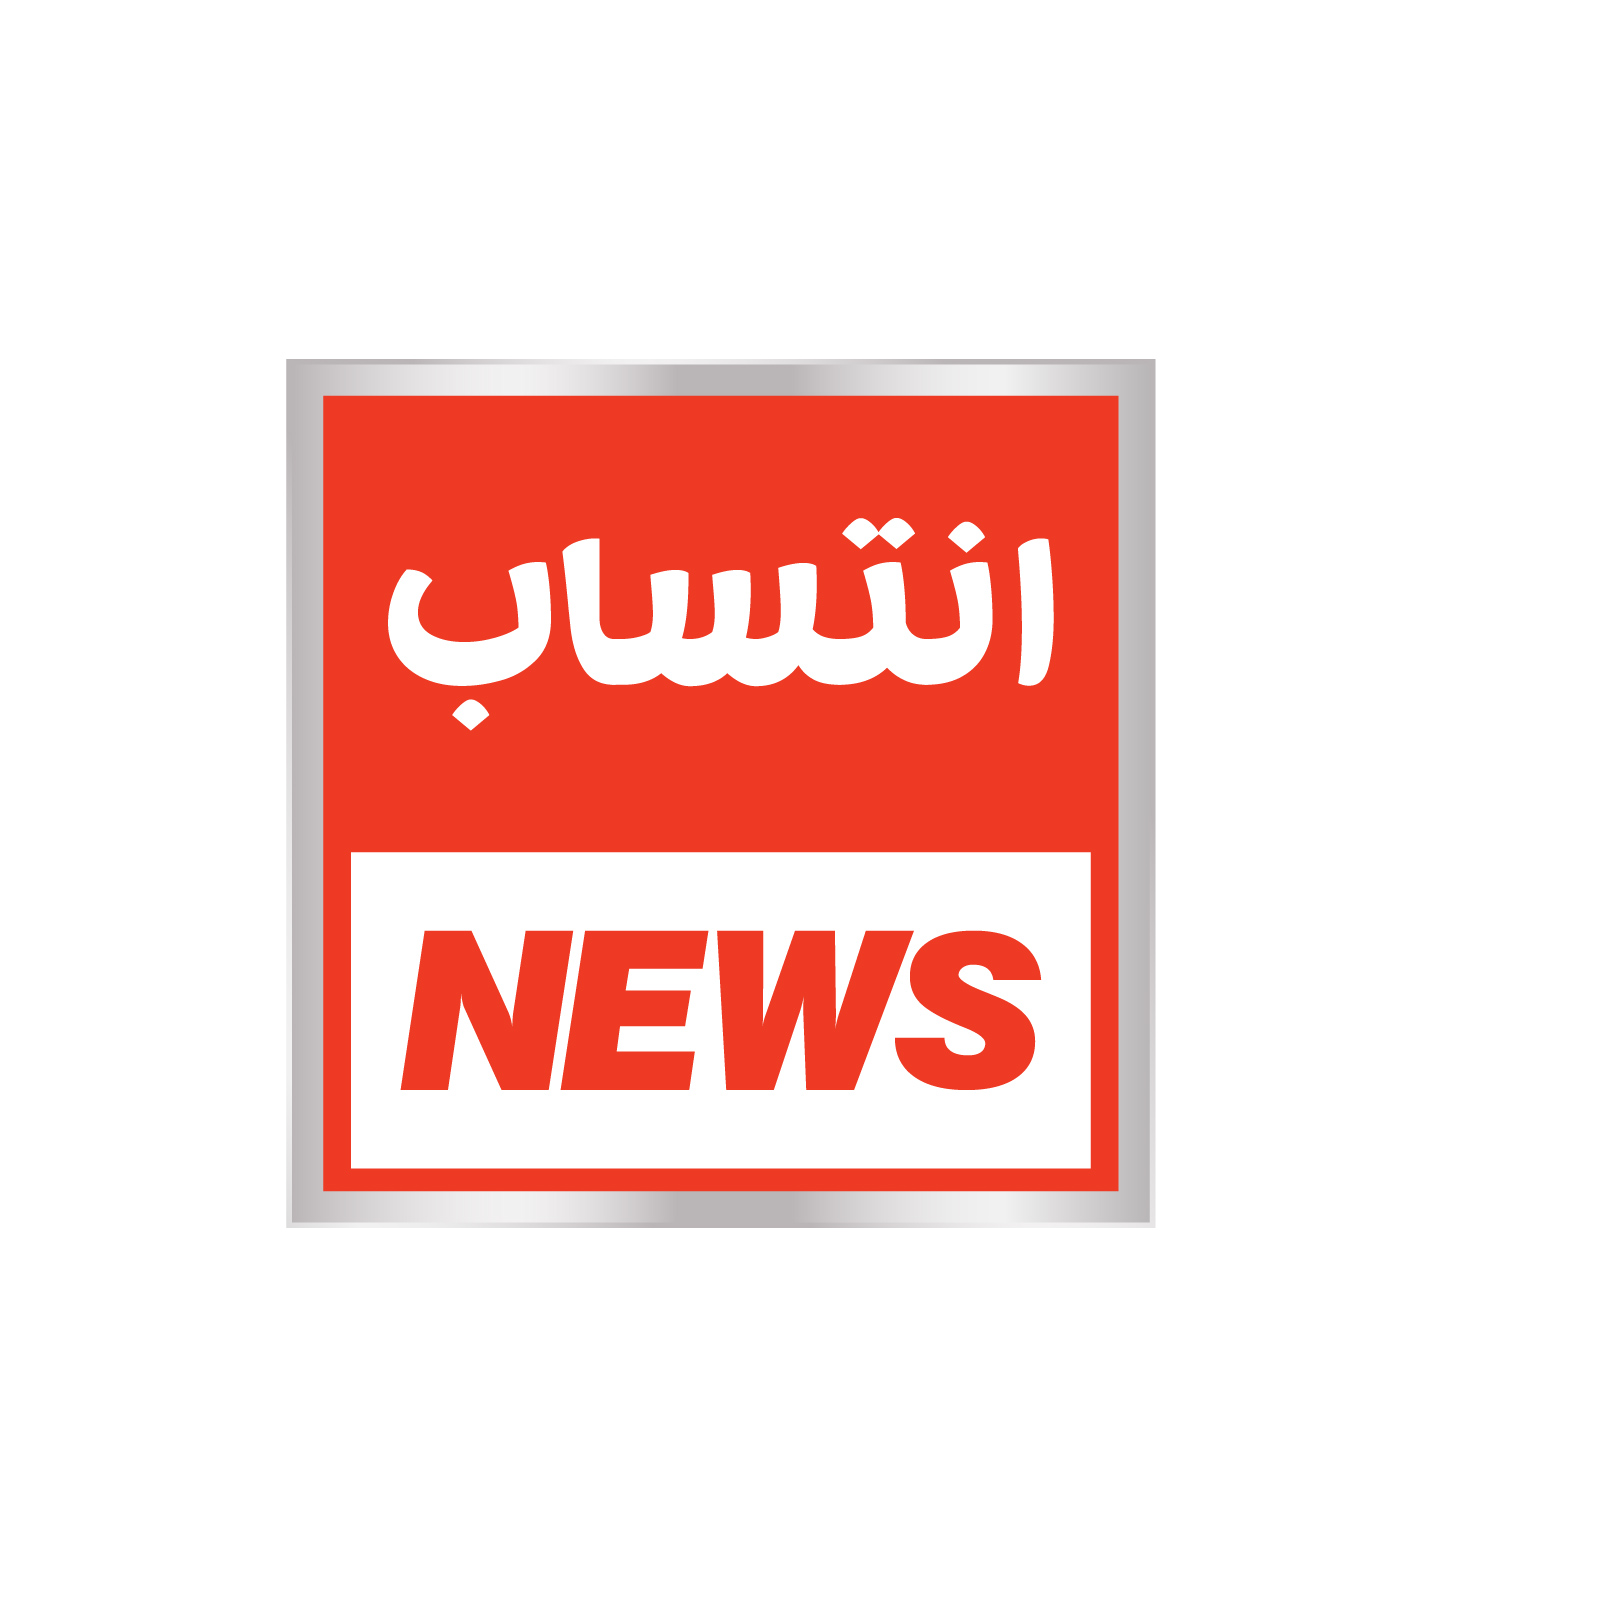 Entasaab News logo-01